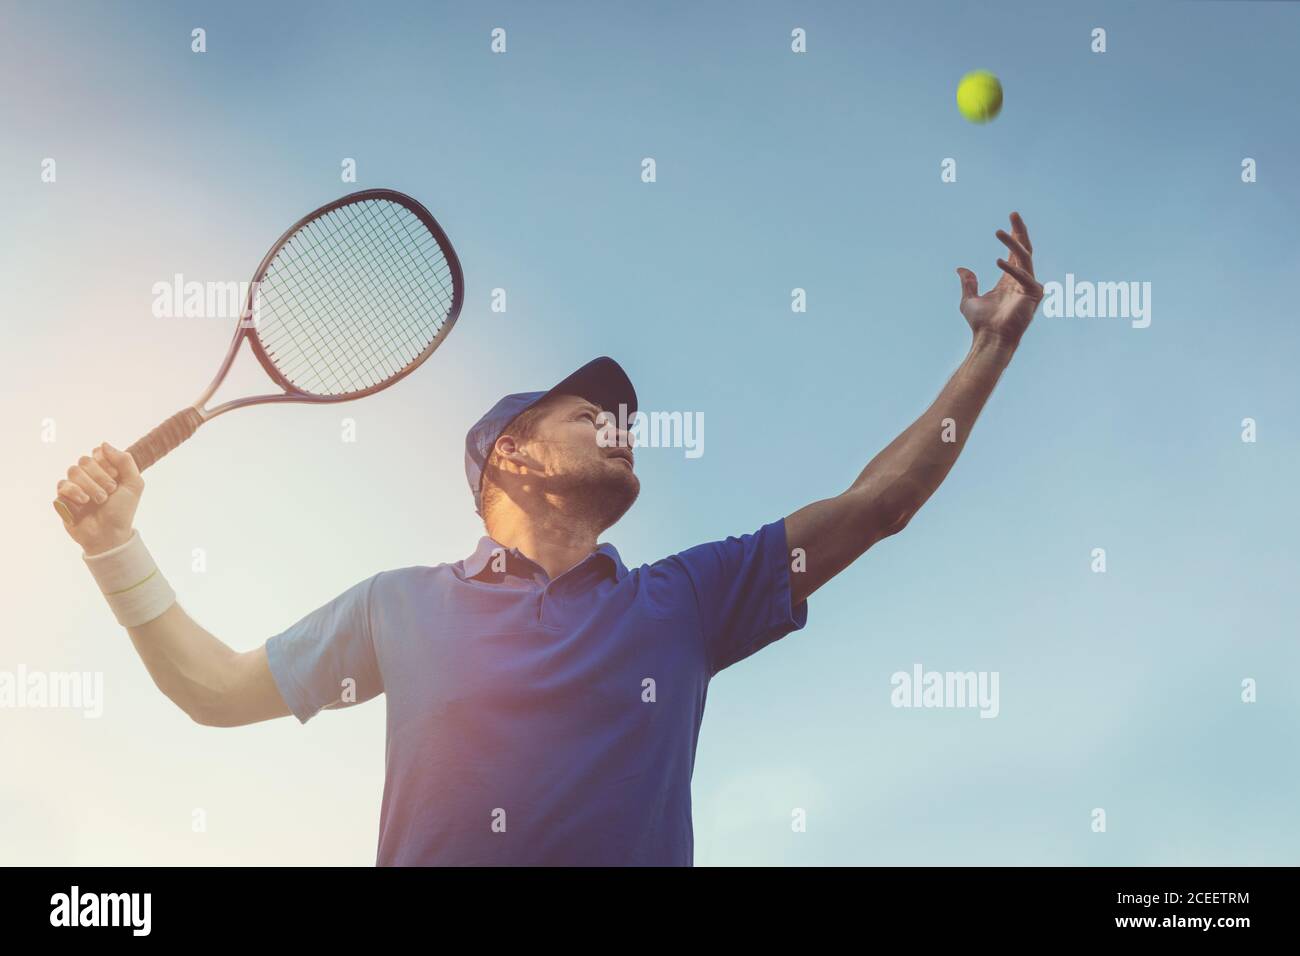 jeune homme actif jouant au tennis à l'extérieur. servez le ballon contre le ciel bleu Banque D'Images